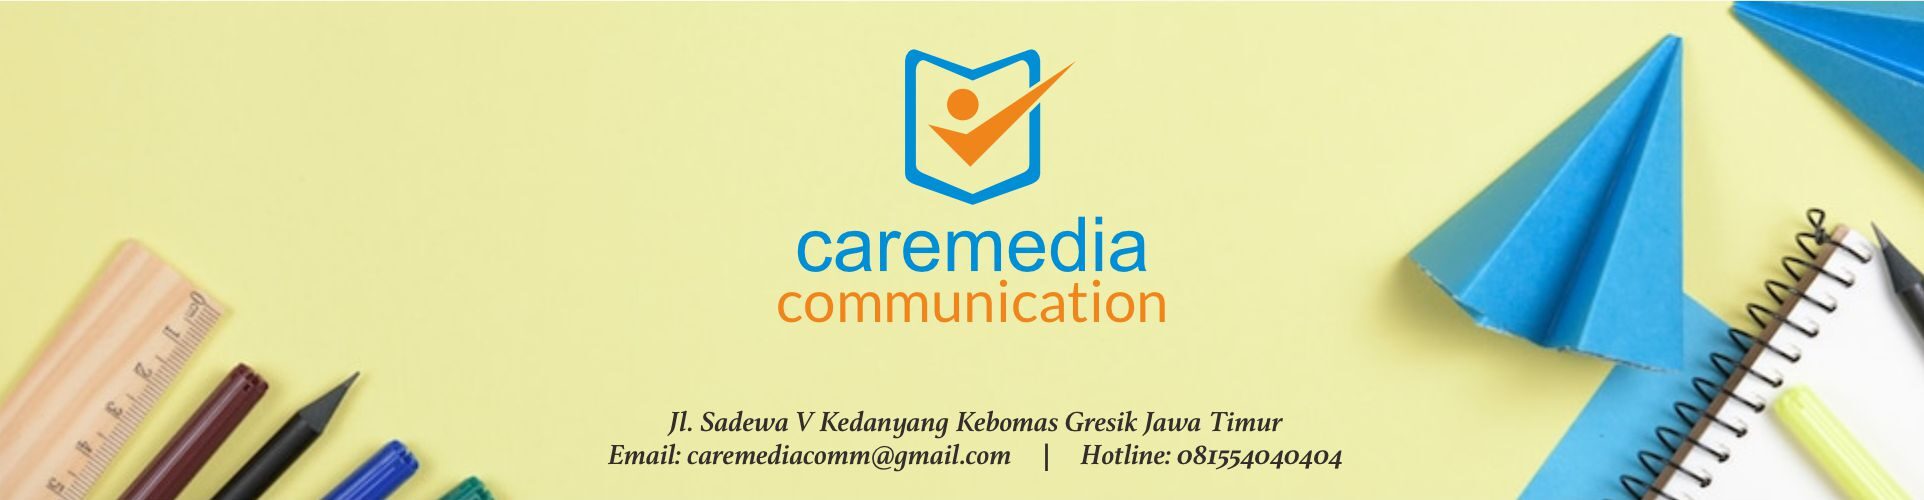 Caremedia Communication